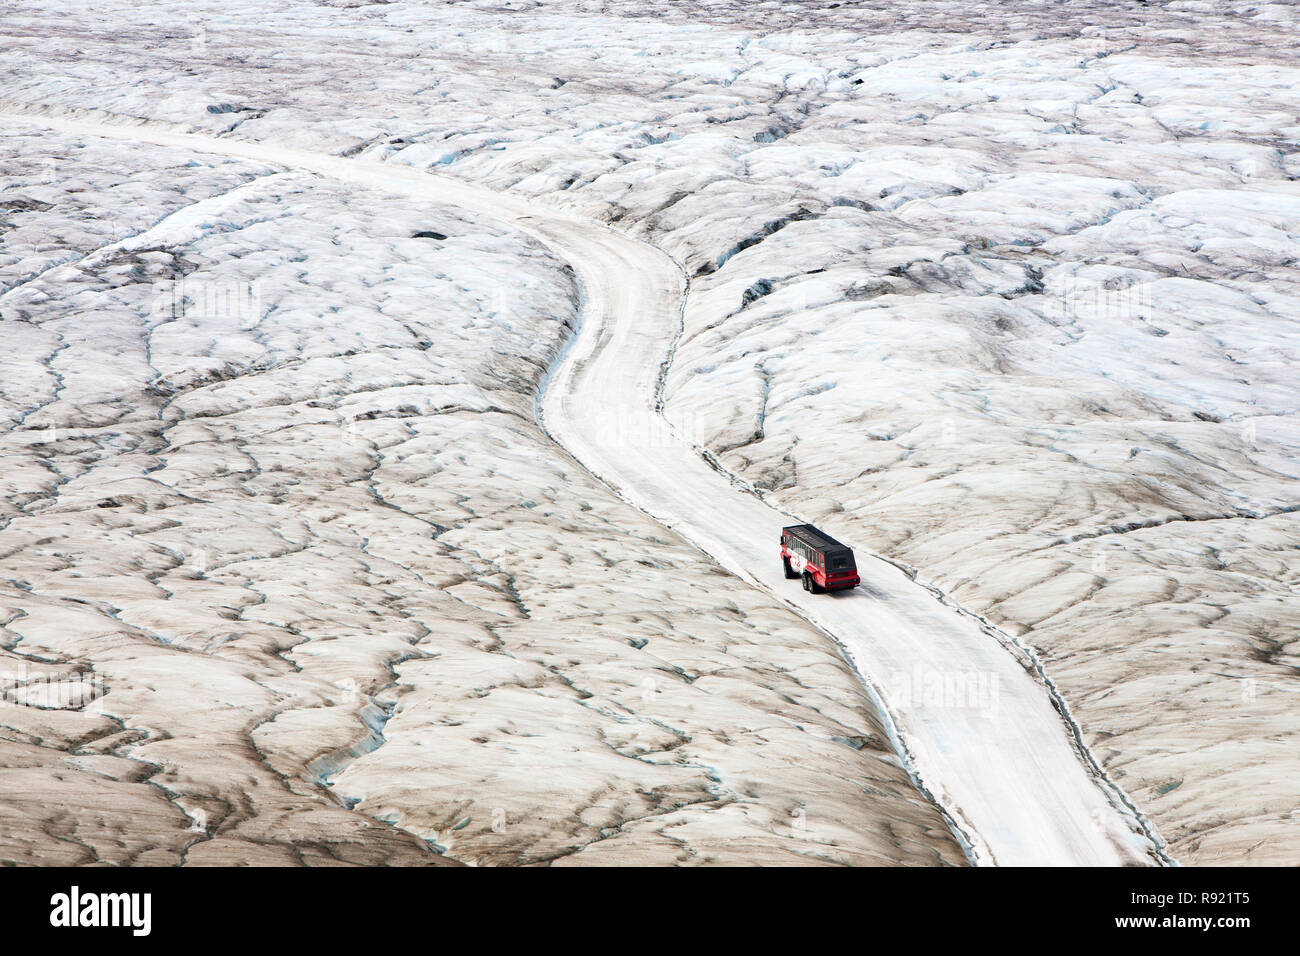 Turismo buggy di ghiaccio del Ghiacciaio Athabasca che sta svanendo in modo estremamente rapido e ha perso oltre il 60% della sua massa di ghiaccio in meno di 150 anni. Canadian Rockies. Foto Stock